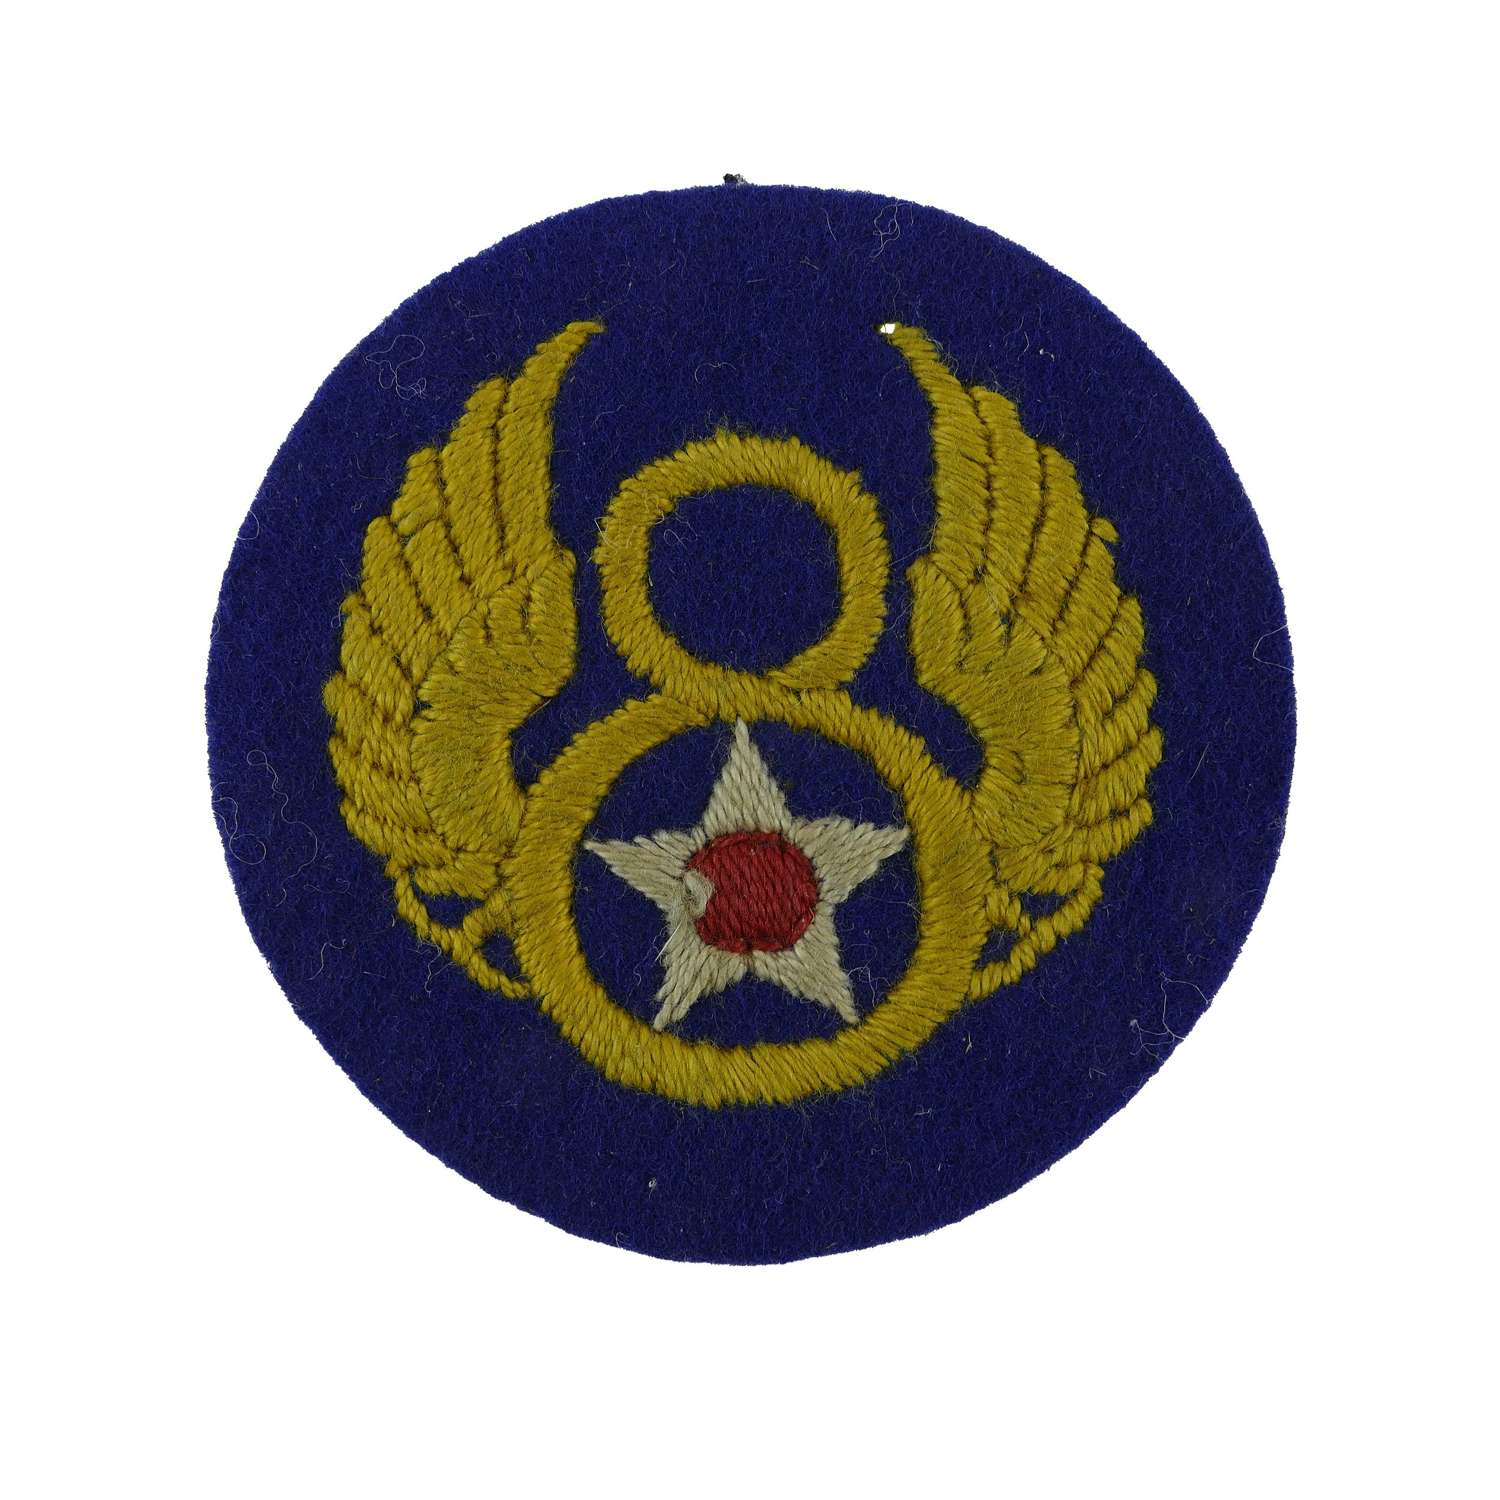 USAAF 8th AF shoulder patch - English made